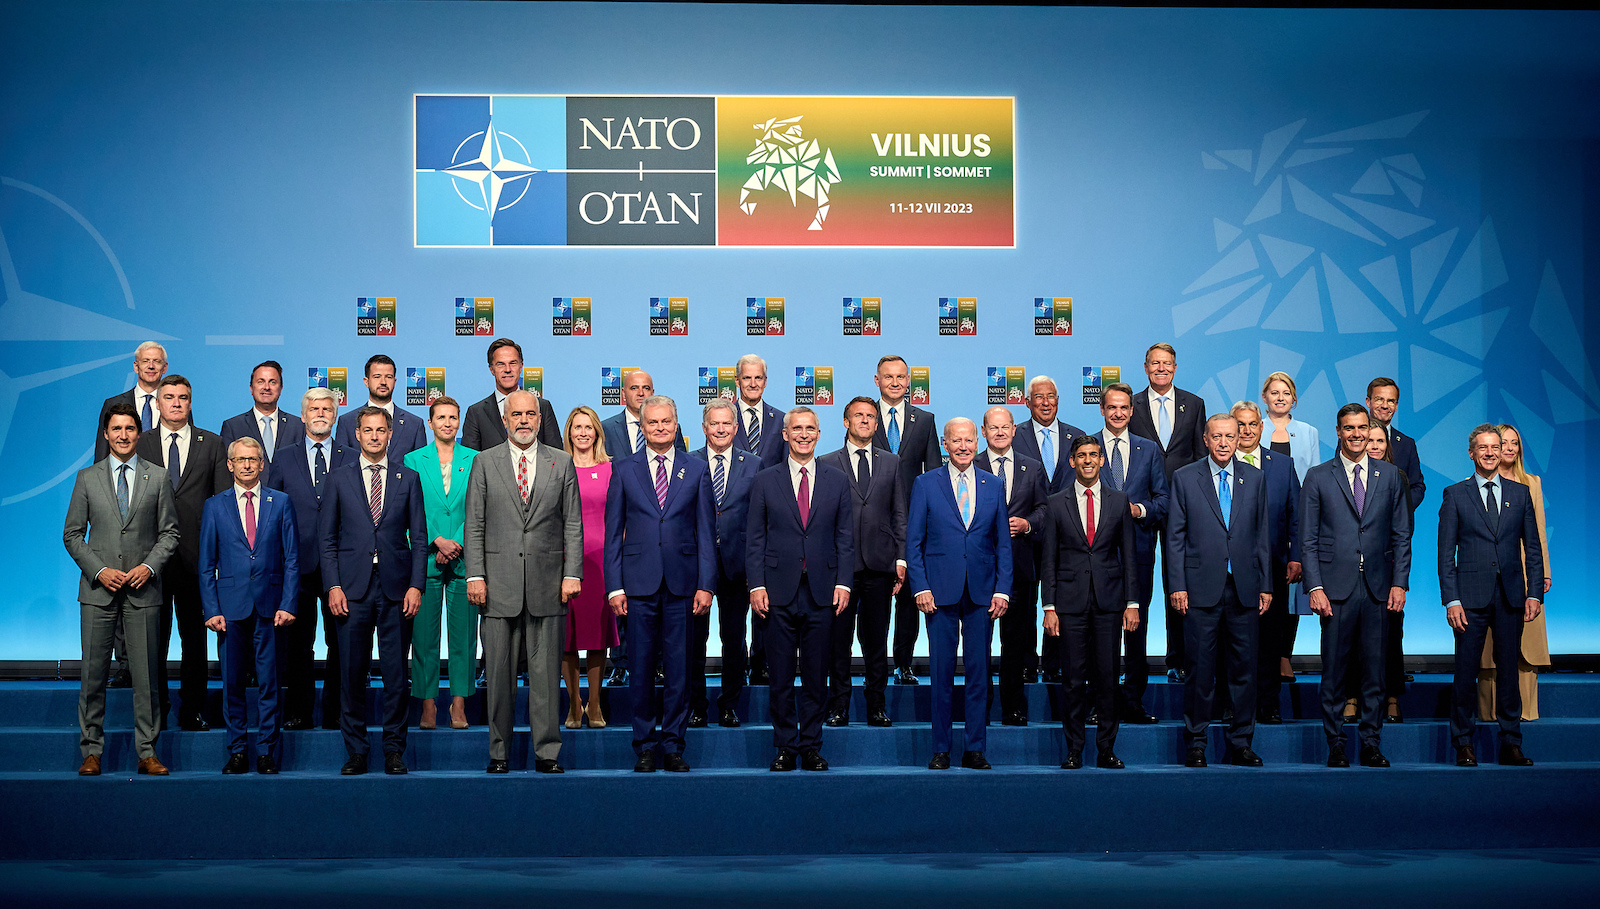 NATO Summit in Vilinius